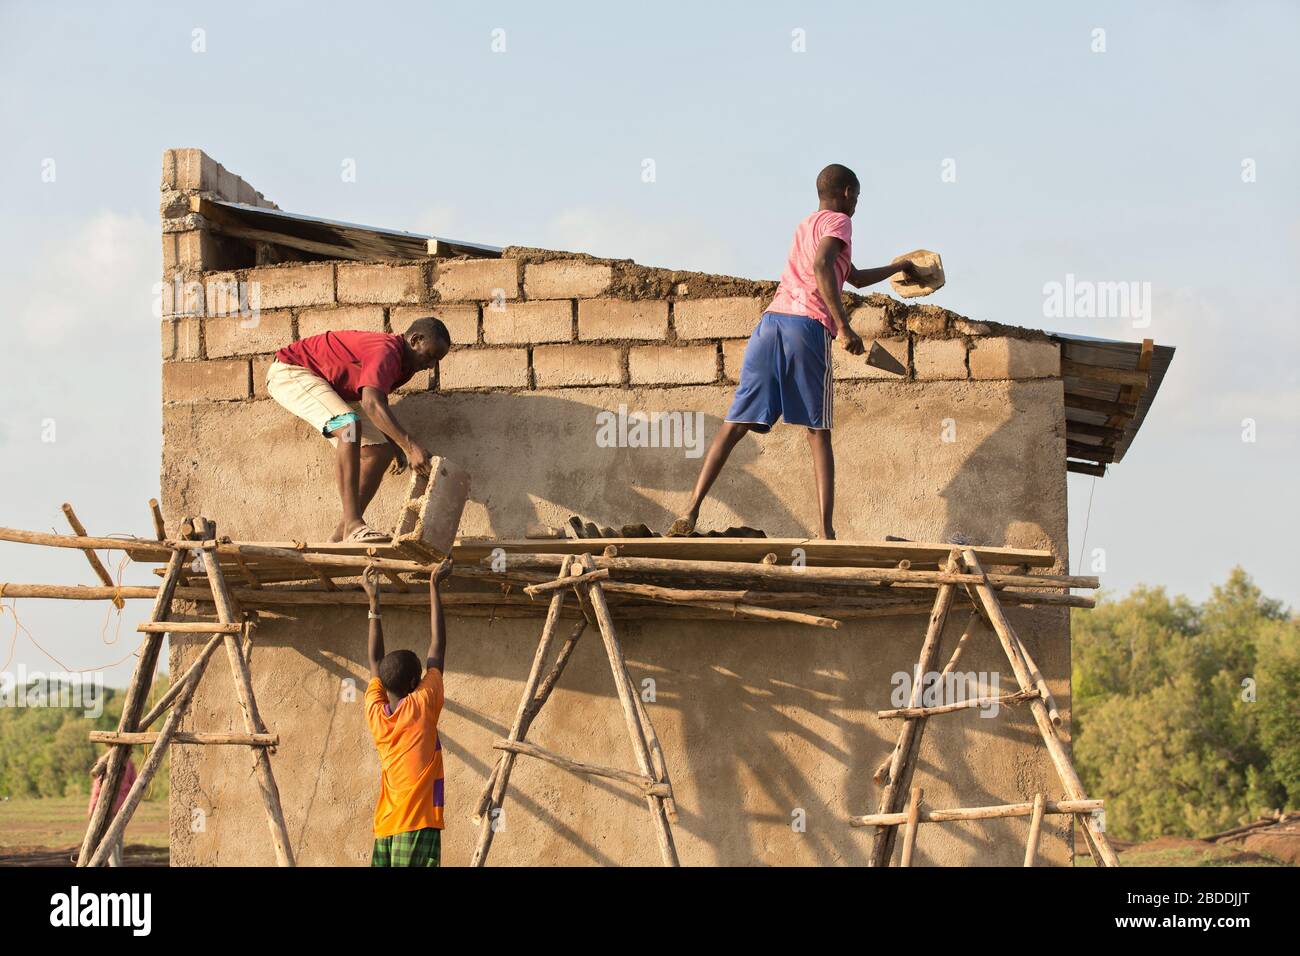 11.11.2019, Burferedo, région somalienne, Ethiopie - les travailleurs de la construction se tiennent sur un échafaudage en bois non sécurisé et en ont établi des briques en béton. Construction o Banque D'Images